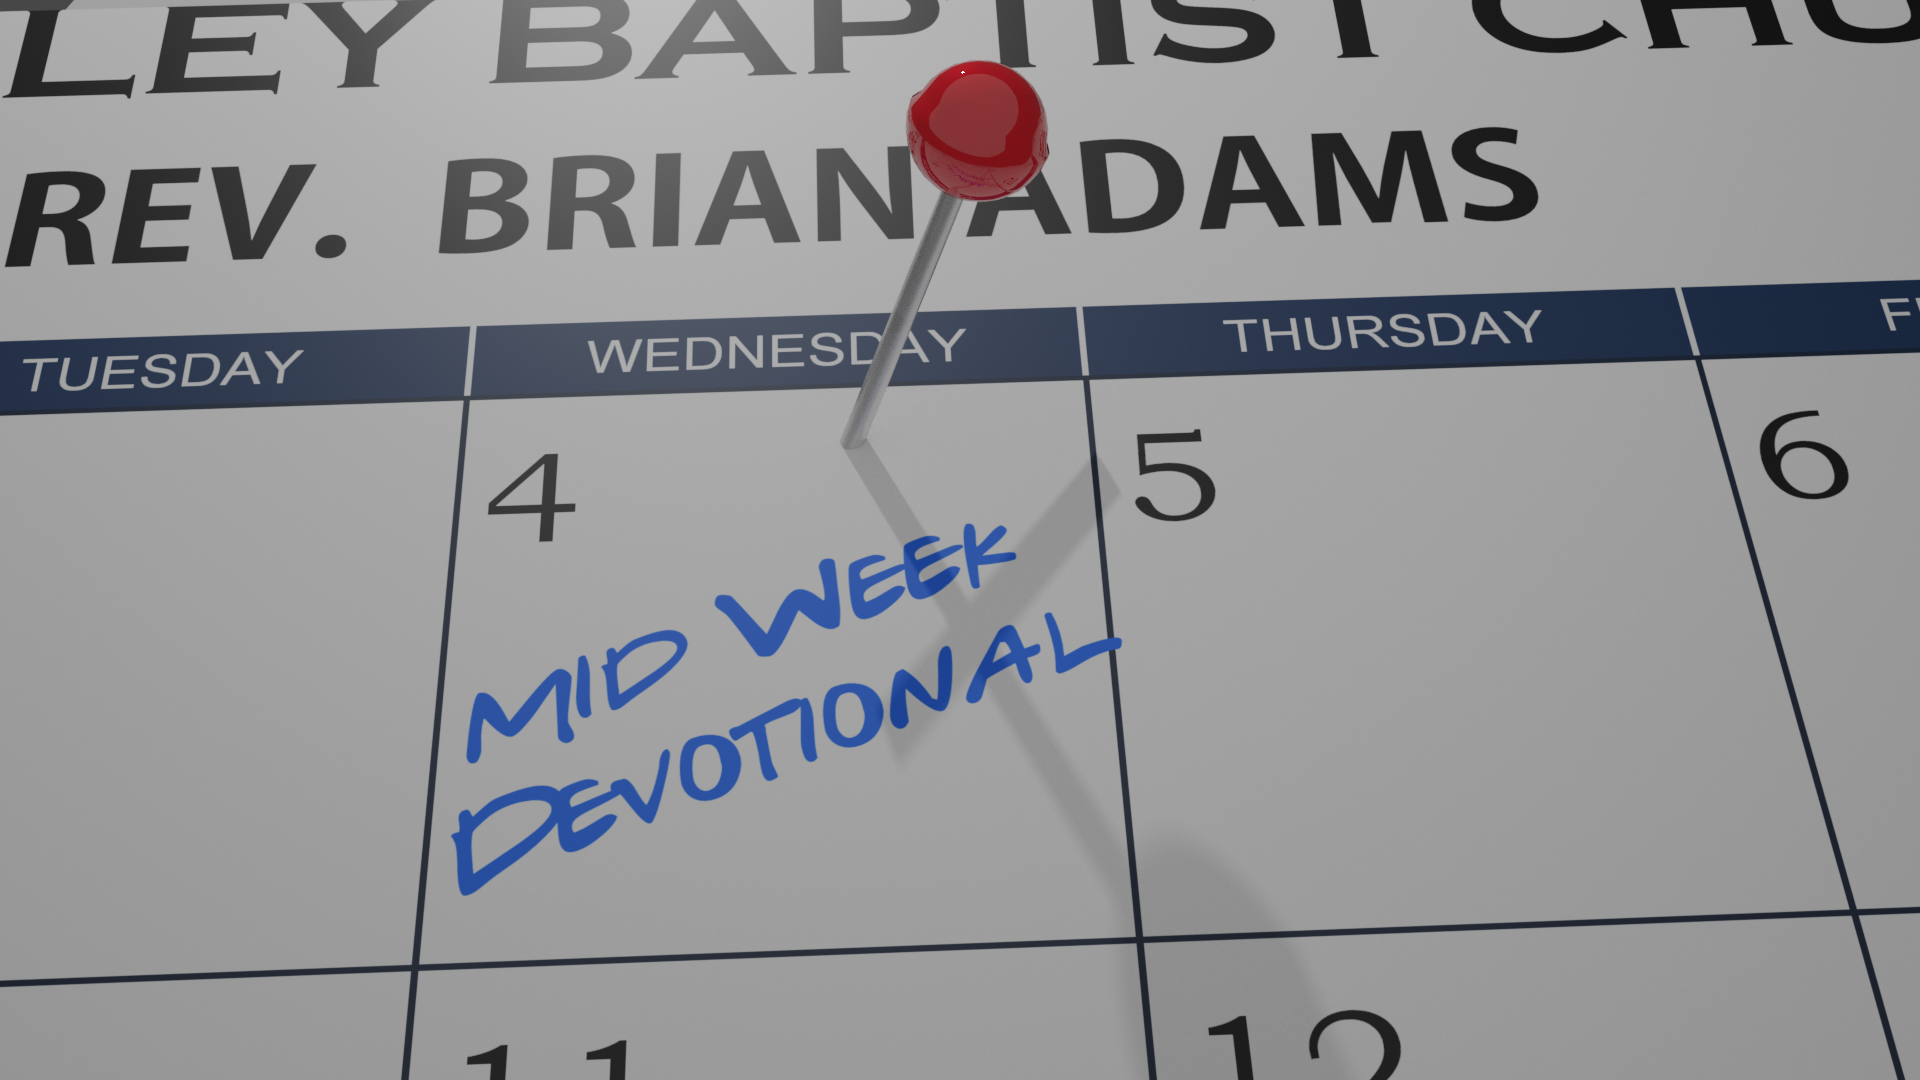 Mid-Week Devotional 11/25/20